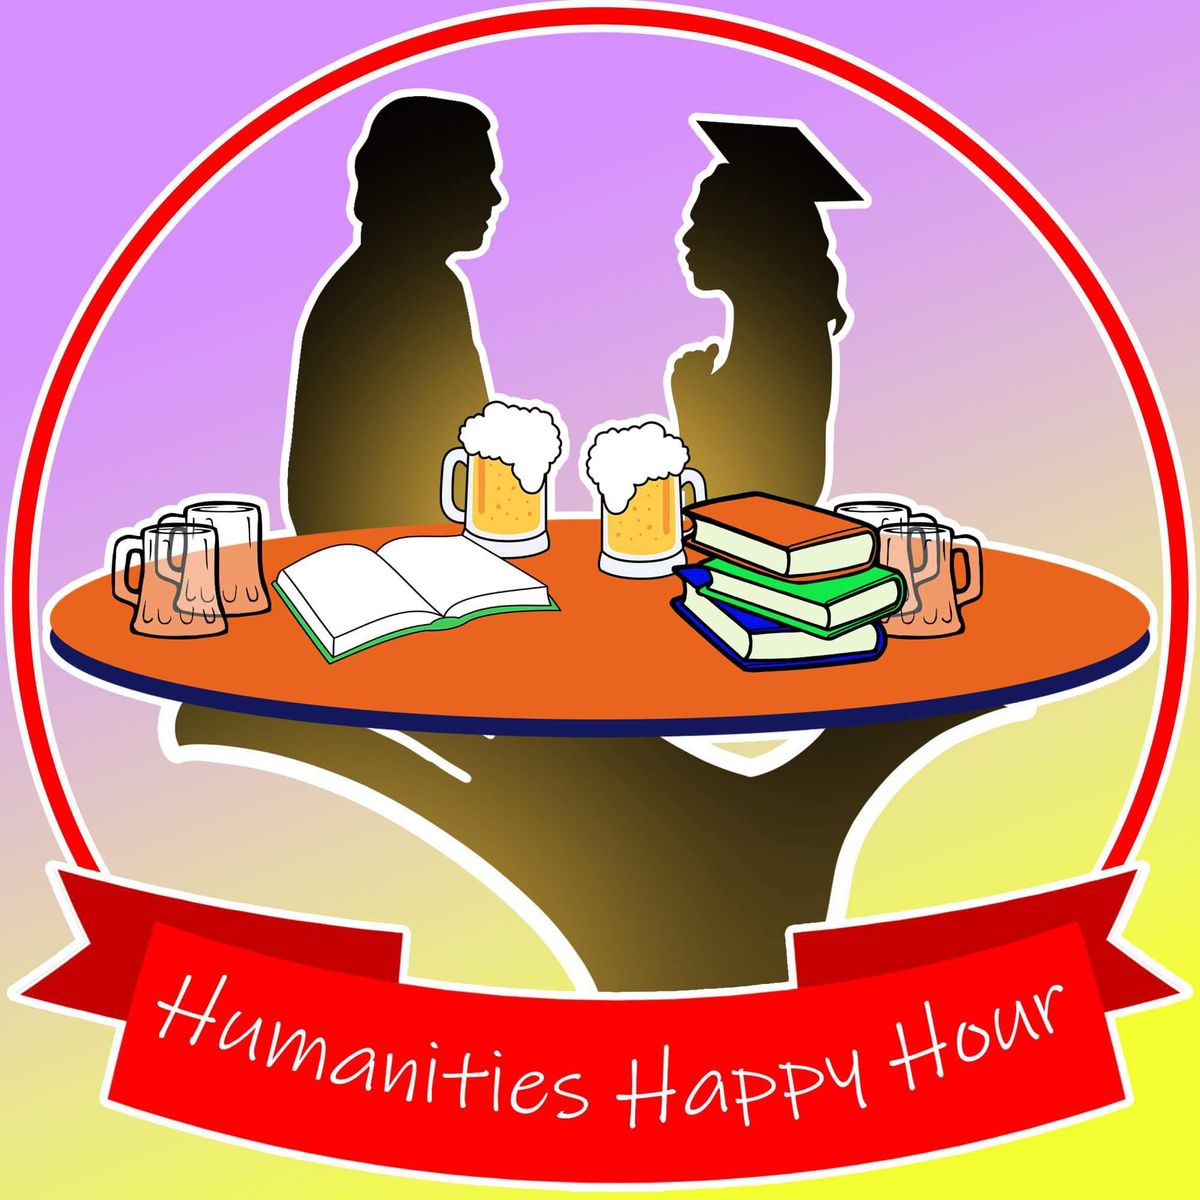 Humanities Happy Hour